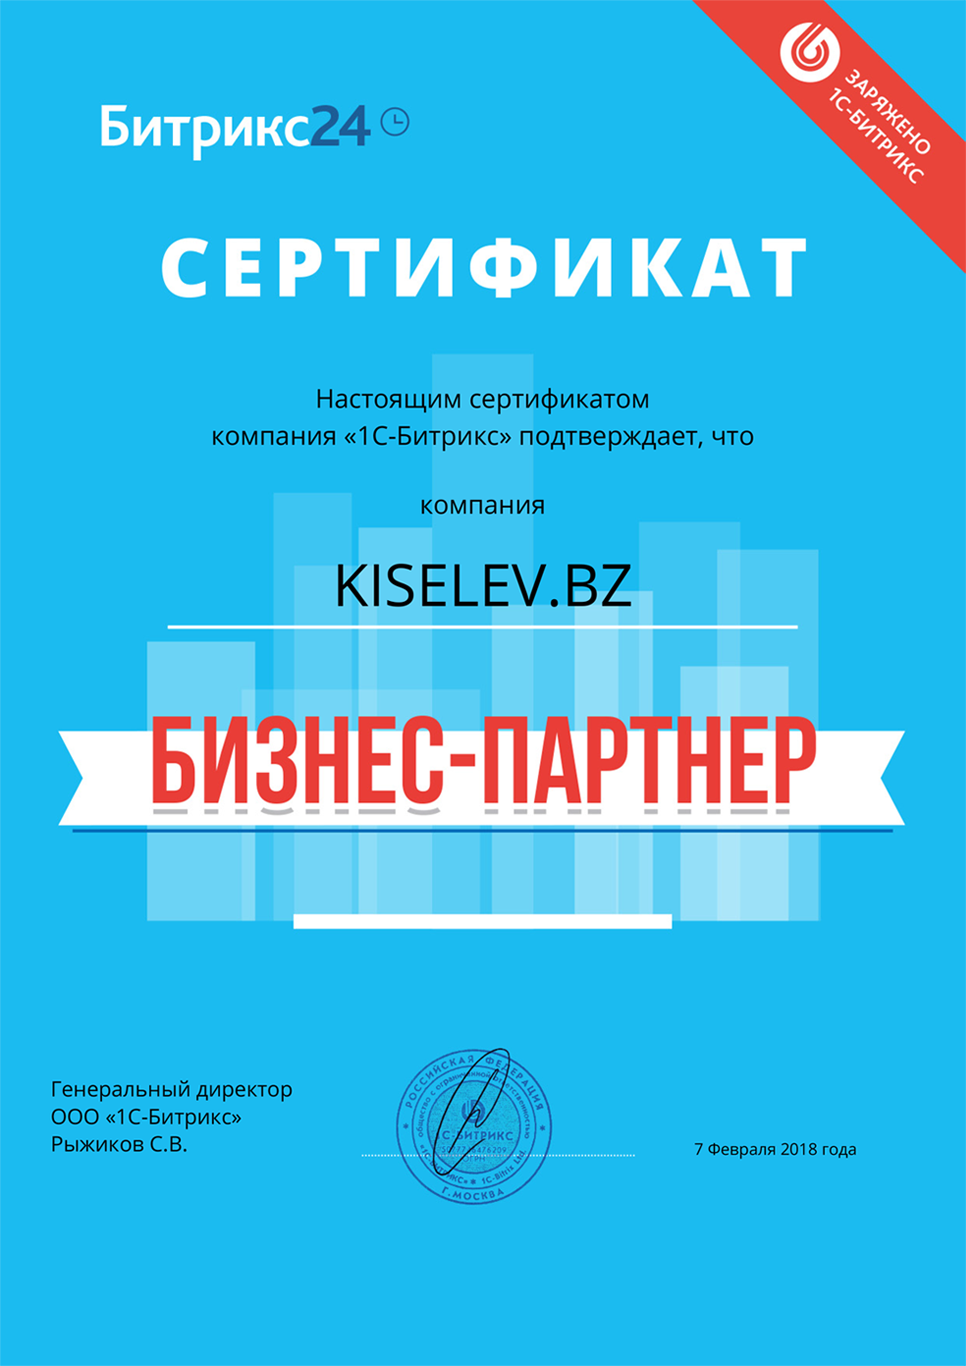 Сертификат партнёра по АМОСРМ в Покровске